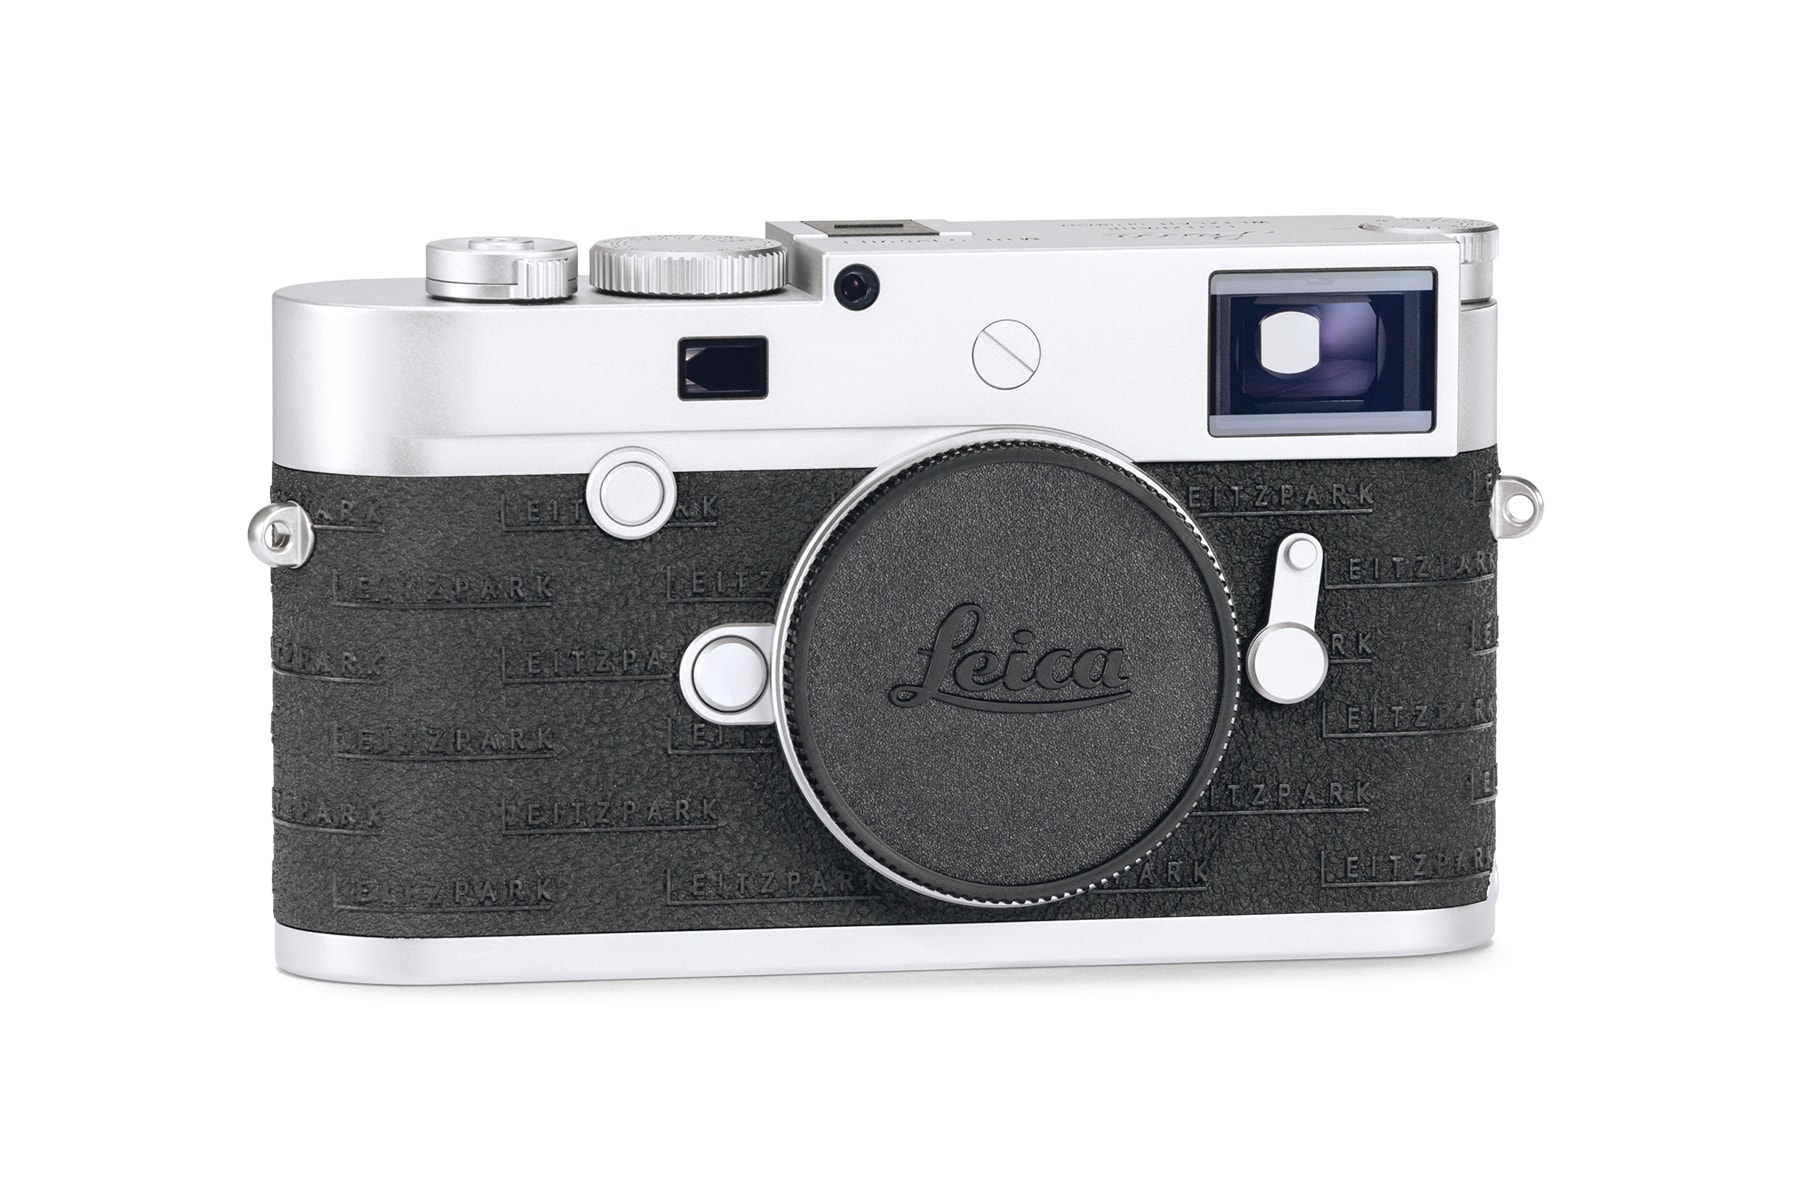 Leica 為品牌體驗中心 Leitz Park 打造全新限定相機系列